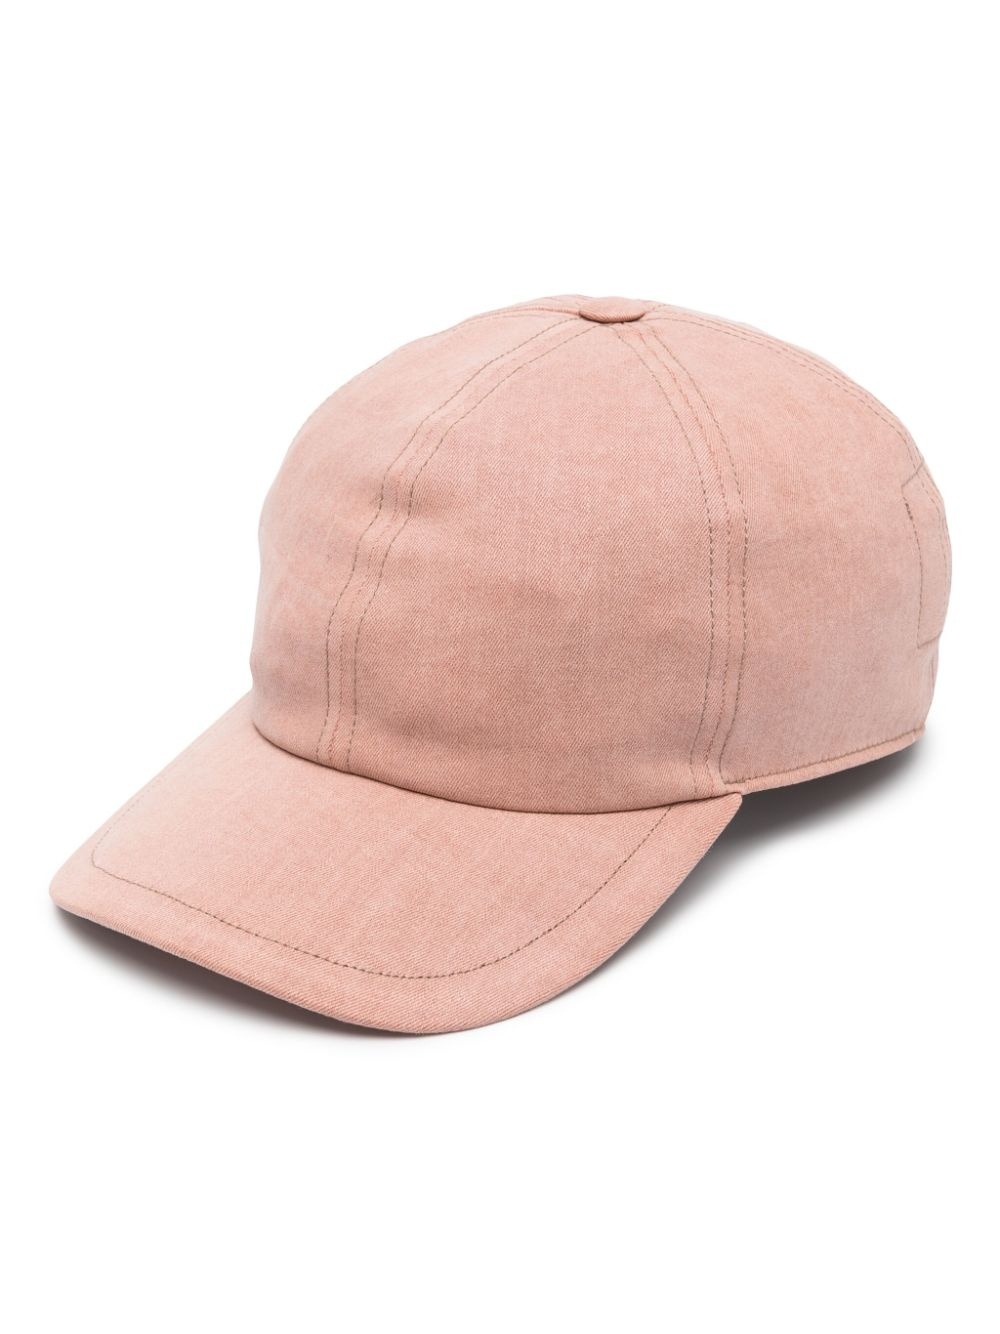 plain baseball cap - 1